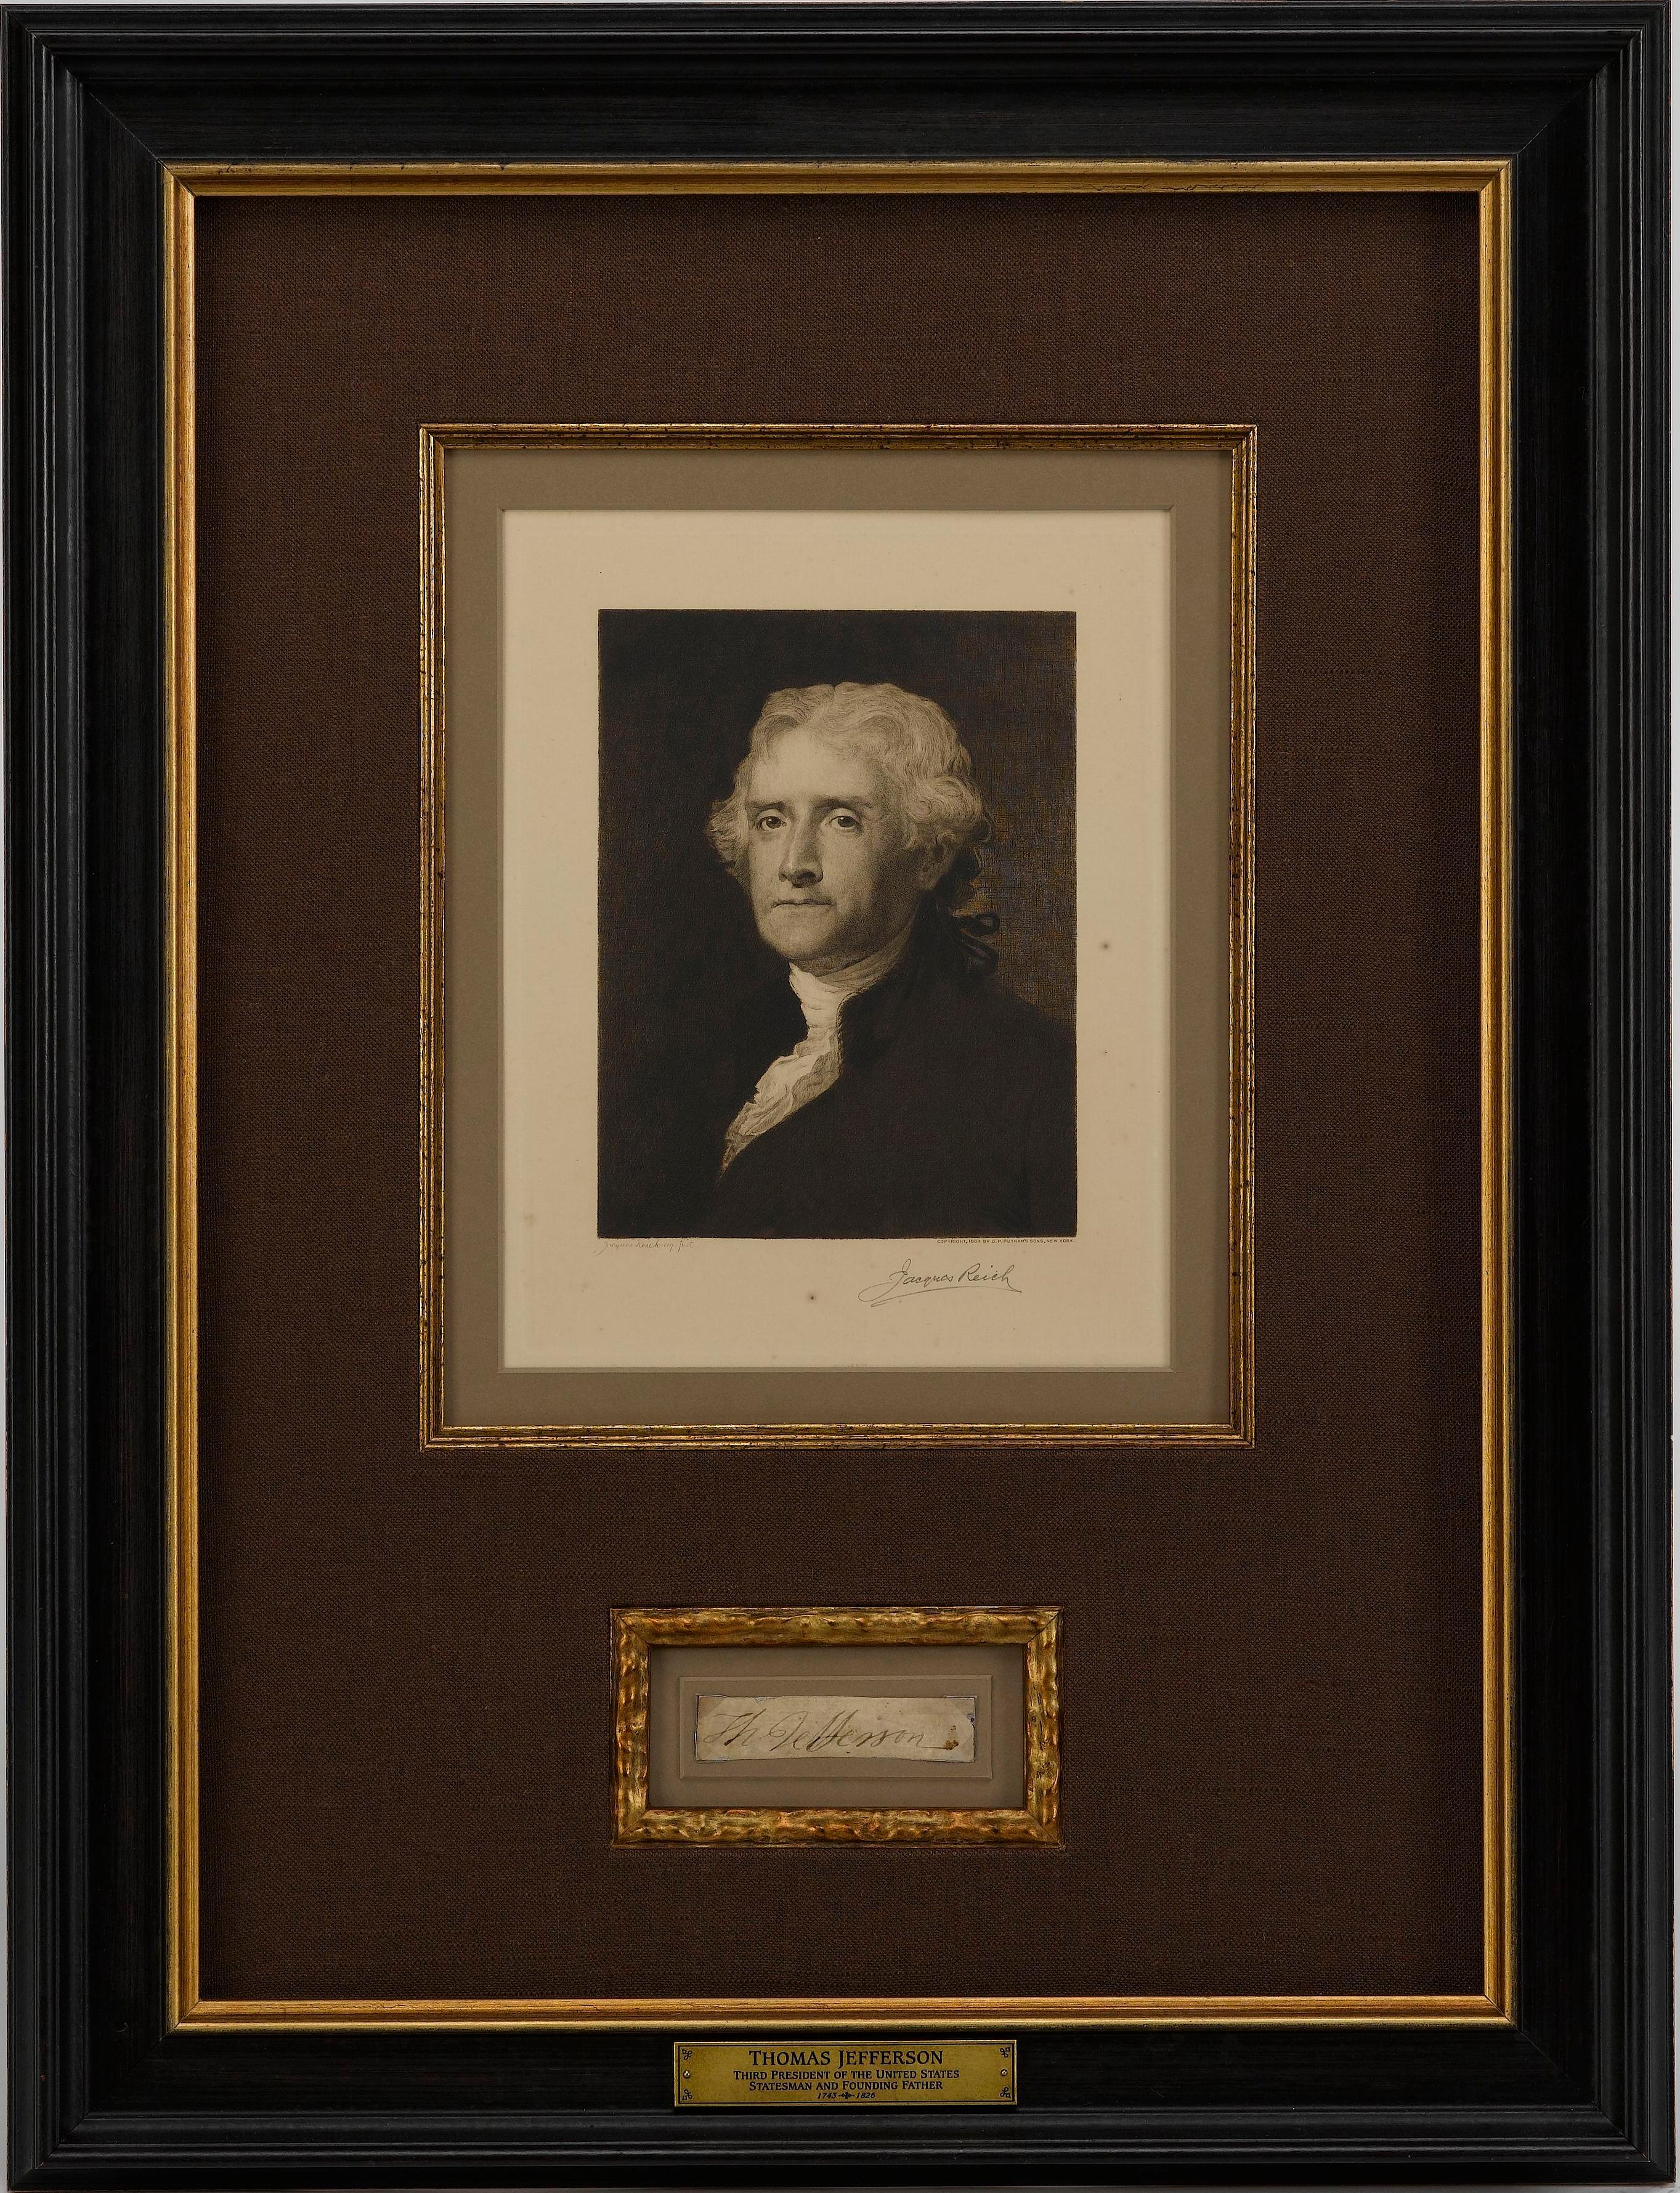 Il s'agit d'une signature originale de Thomas Jefferson, présentée encadrée avec un portrait gravé de Jefferson par Jacques Reich. La signature coupée porte la mention 